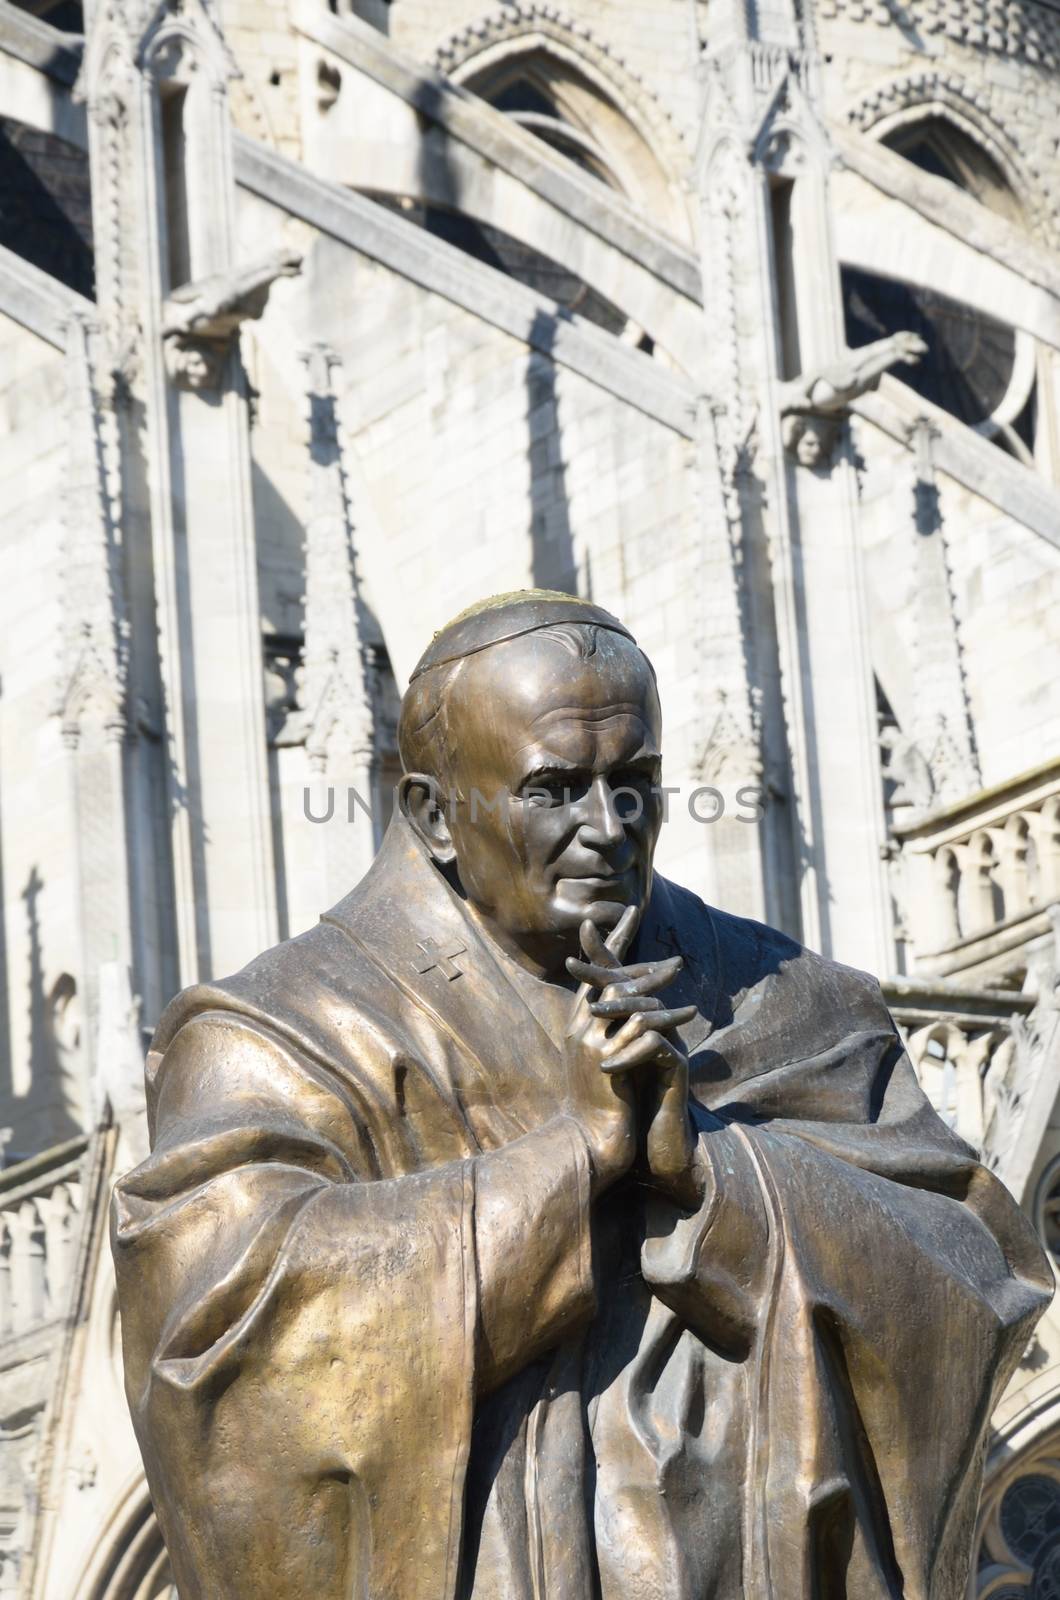 Statue of John Paul II outside Notre dame by pauws99